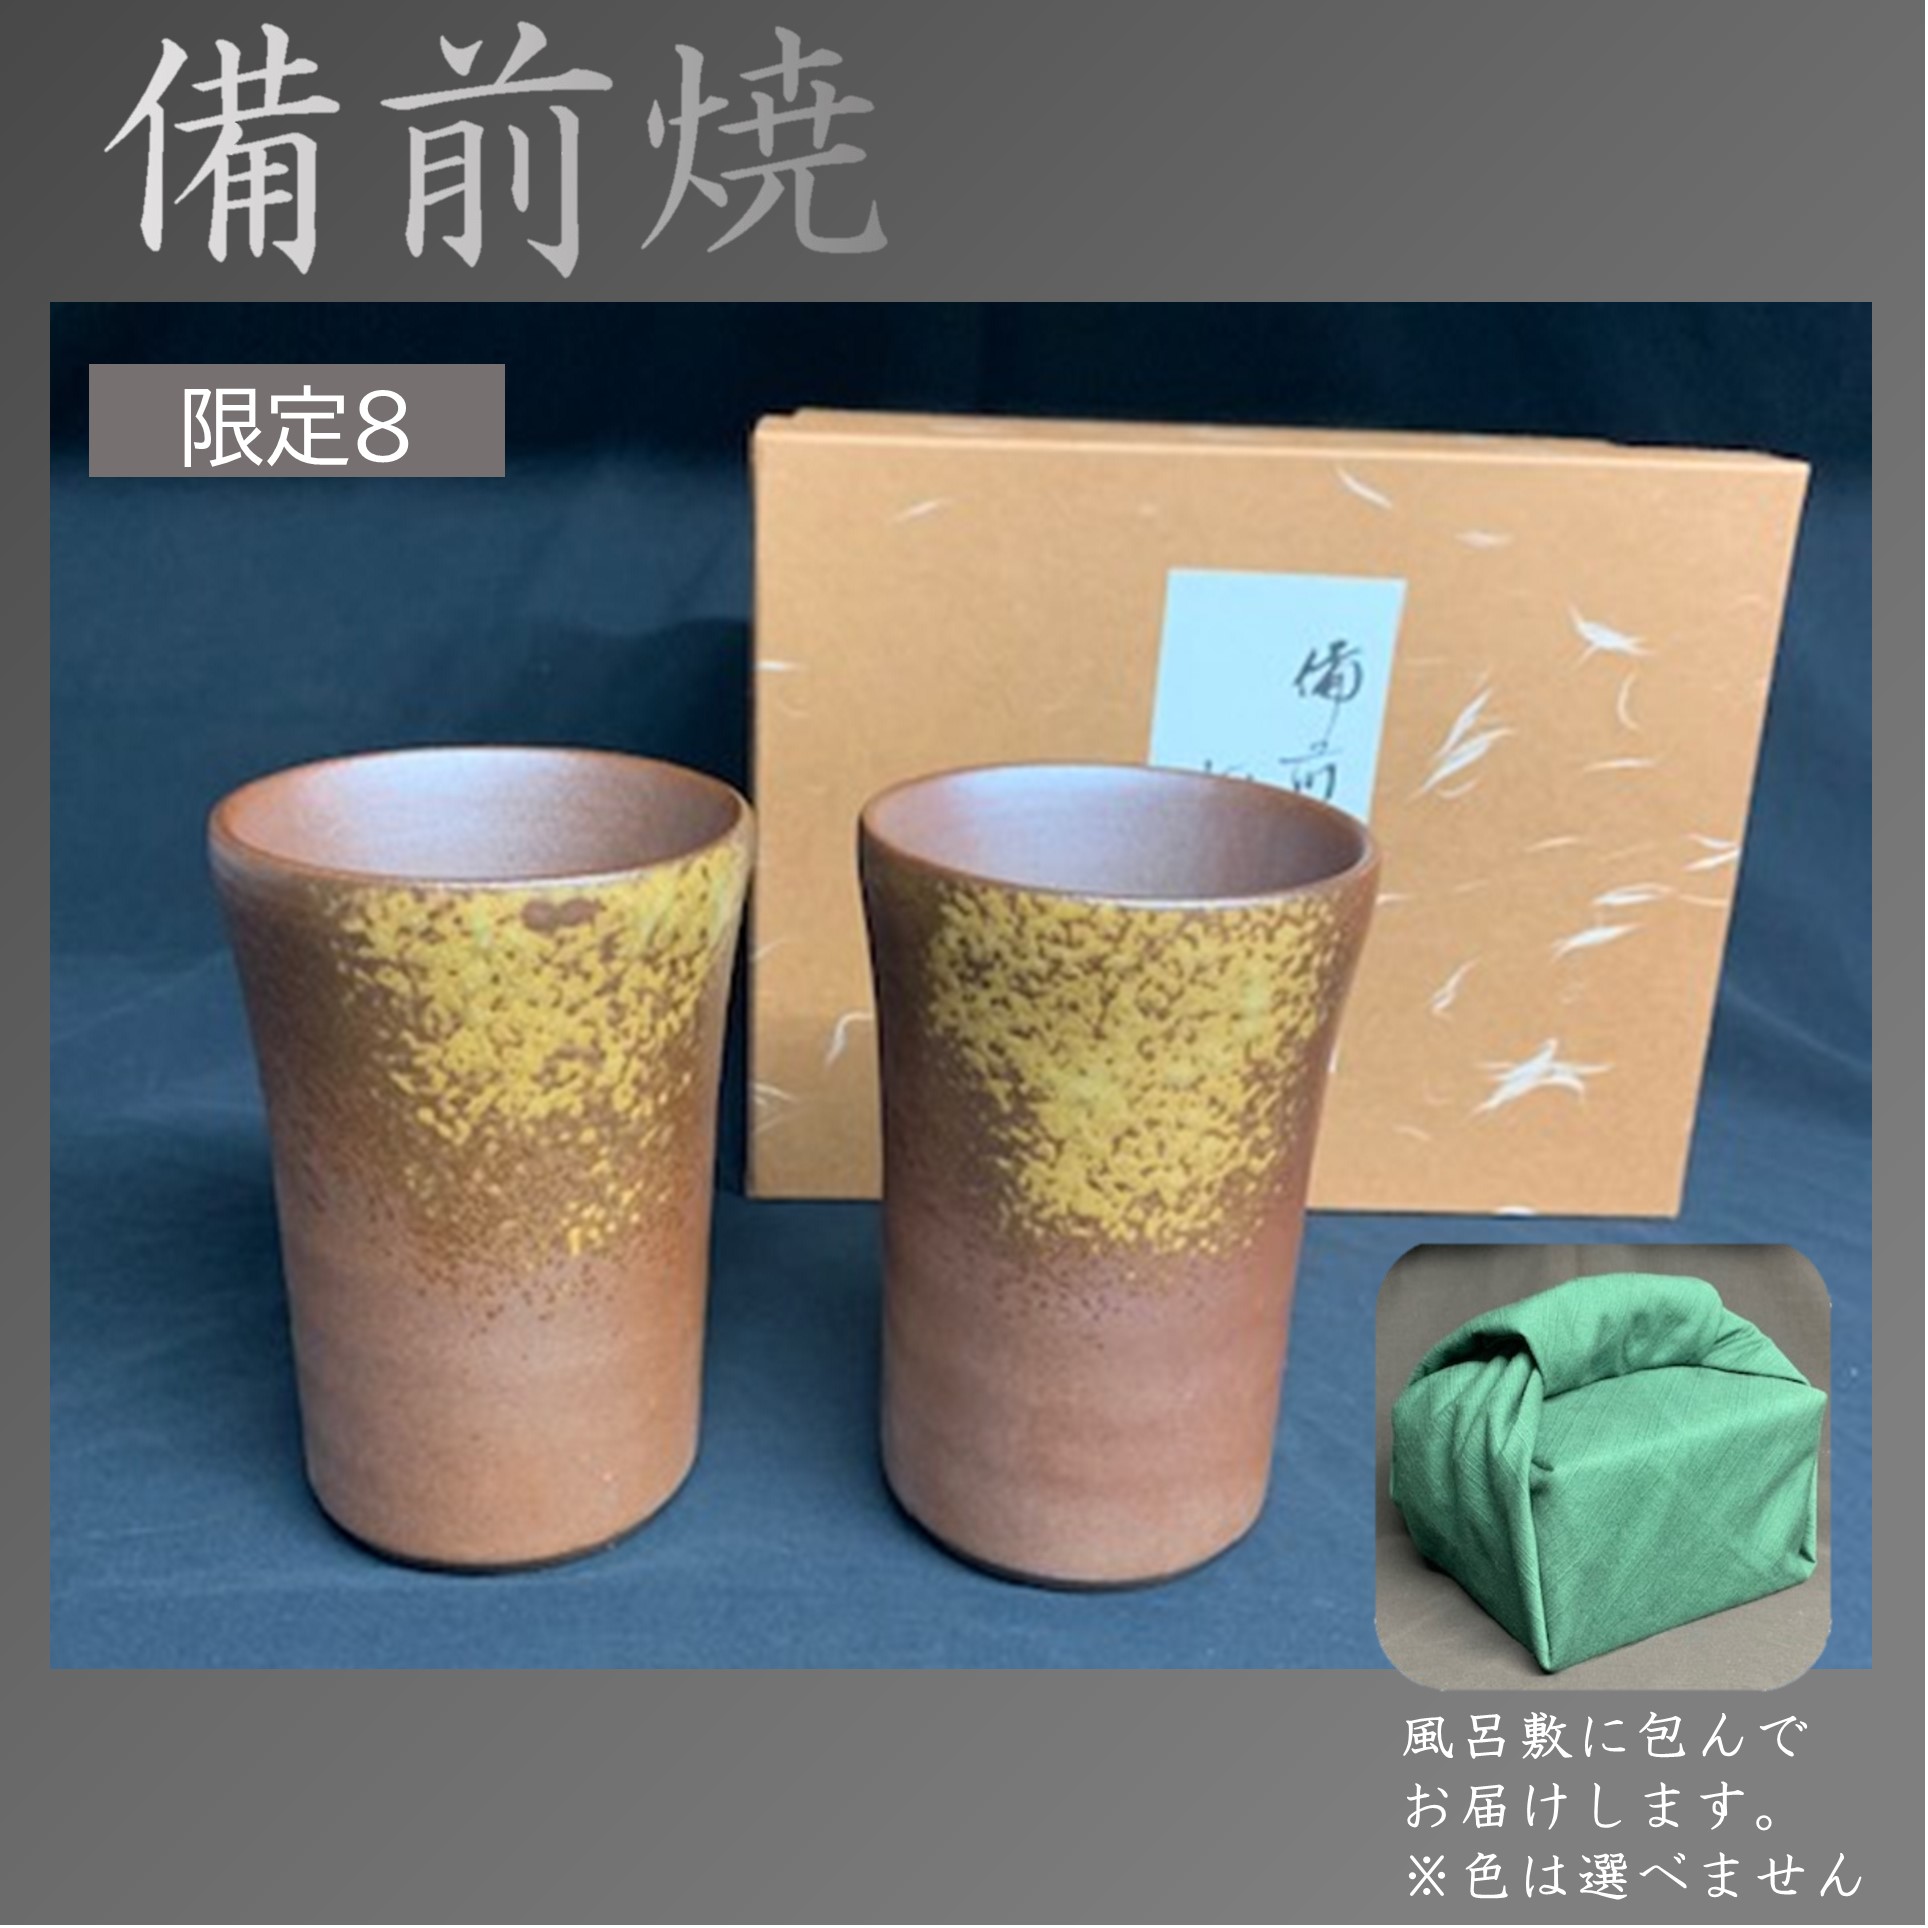 【母の日】岡山鈴鹿屋 備前焼ペアフリーカップセット 商品サムネイル